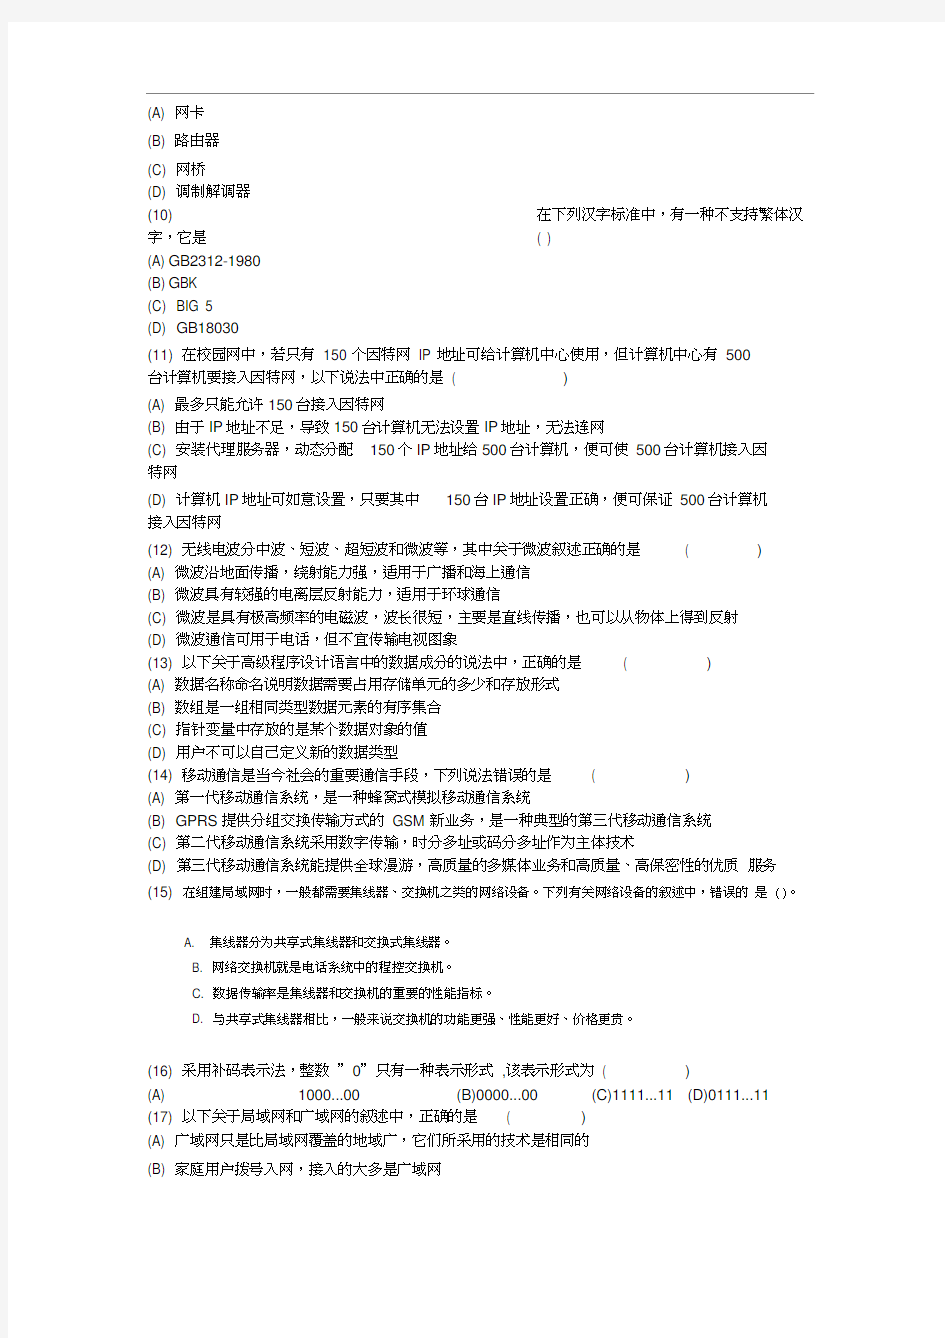 江苏计算机等级考试试题库系统